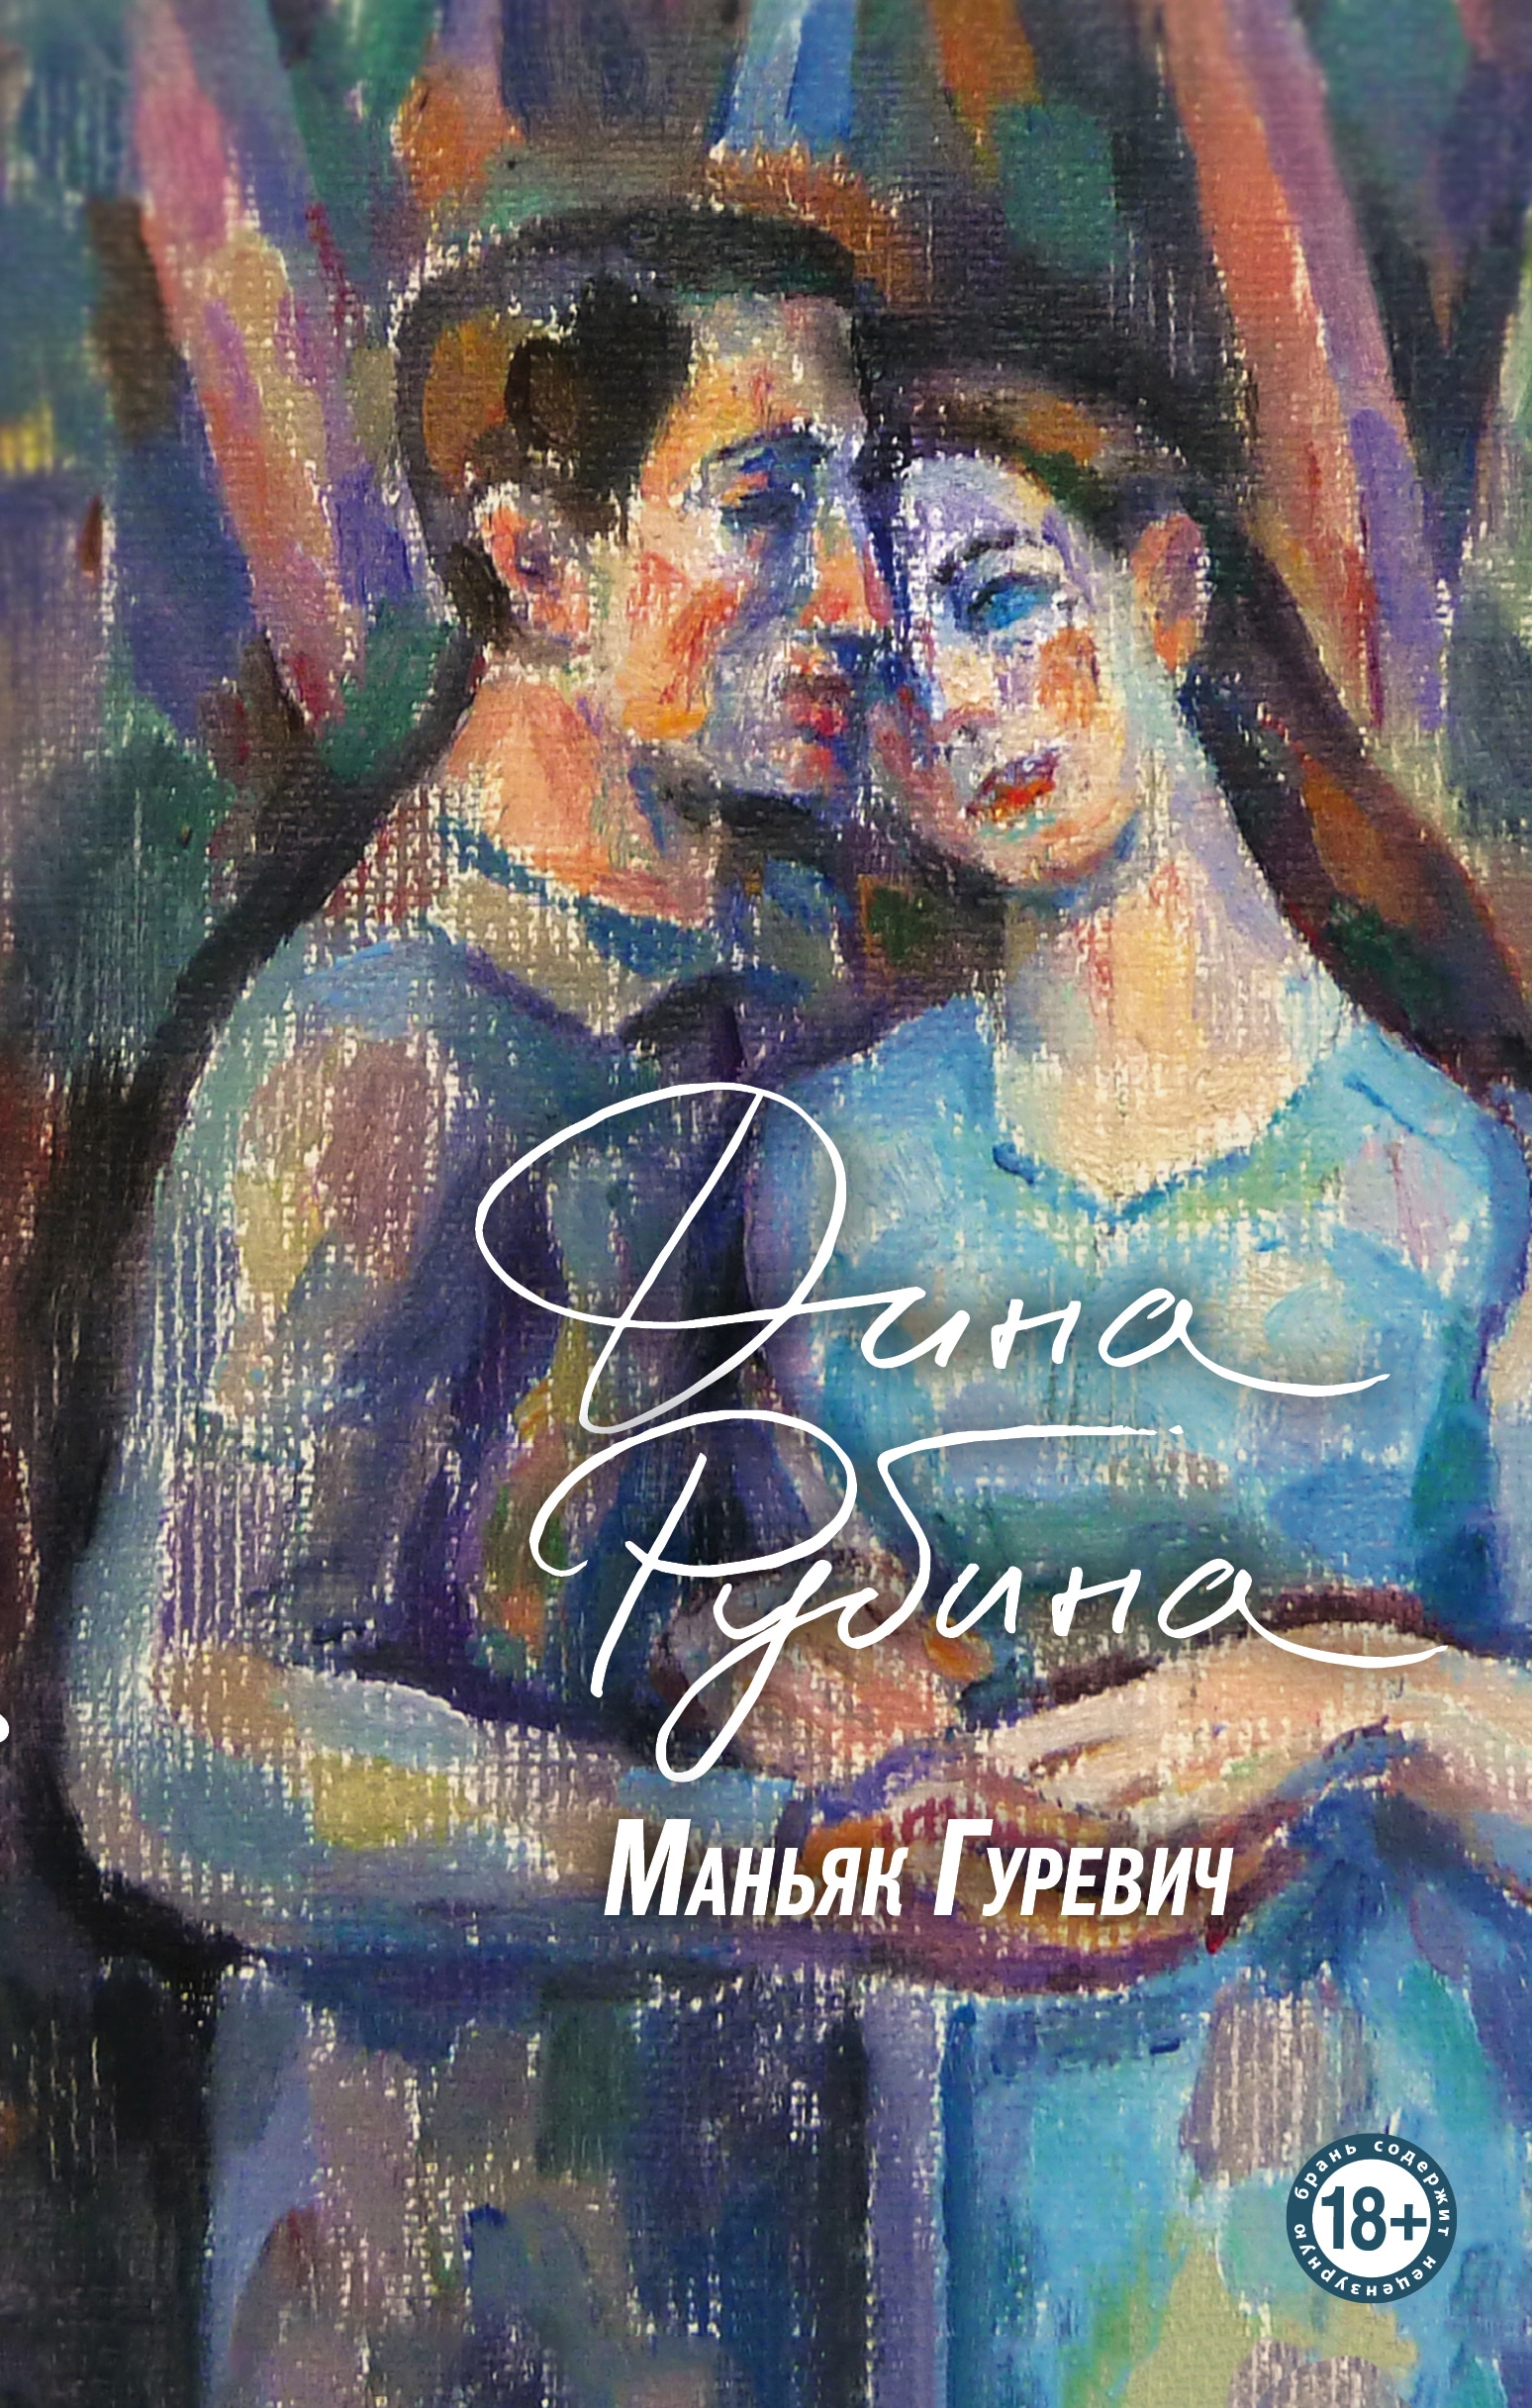 Book “Маньяк Гуревич” by Дина Рубина — June 1, 2022